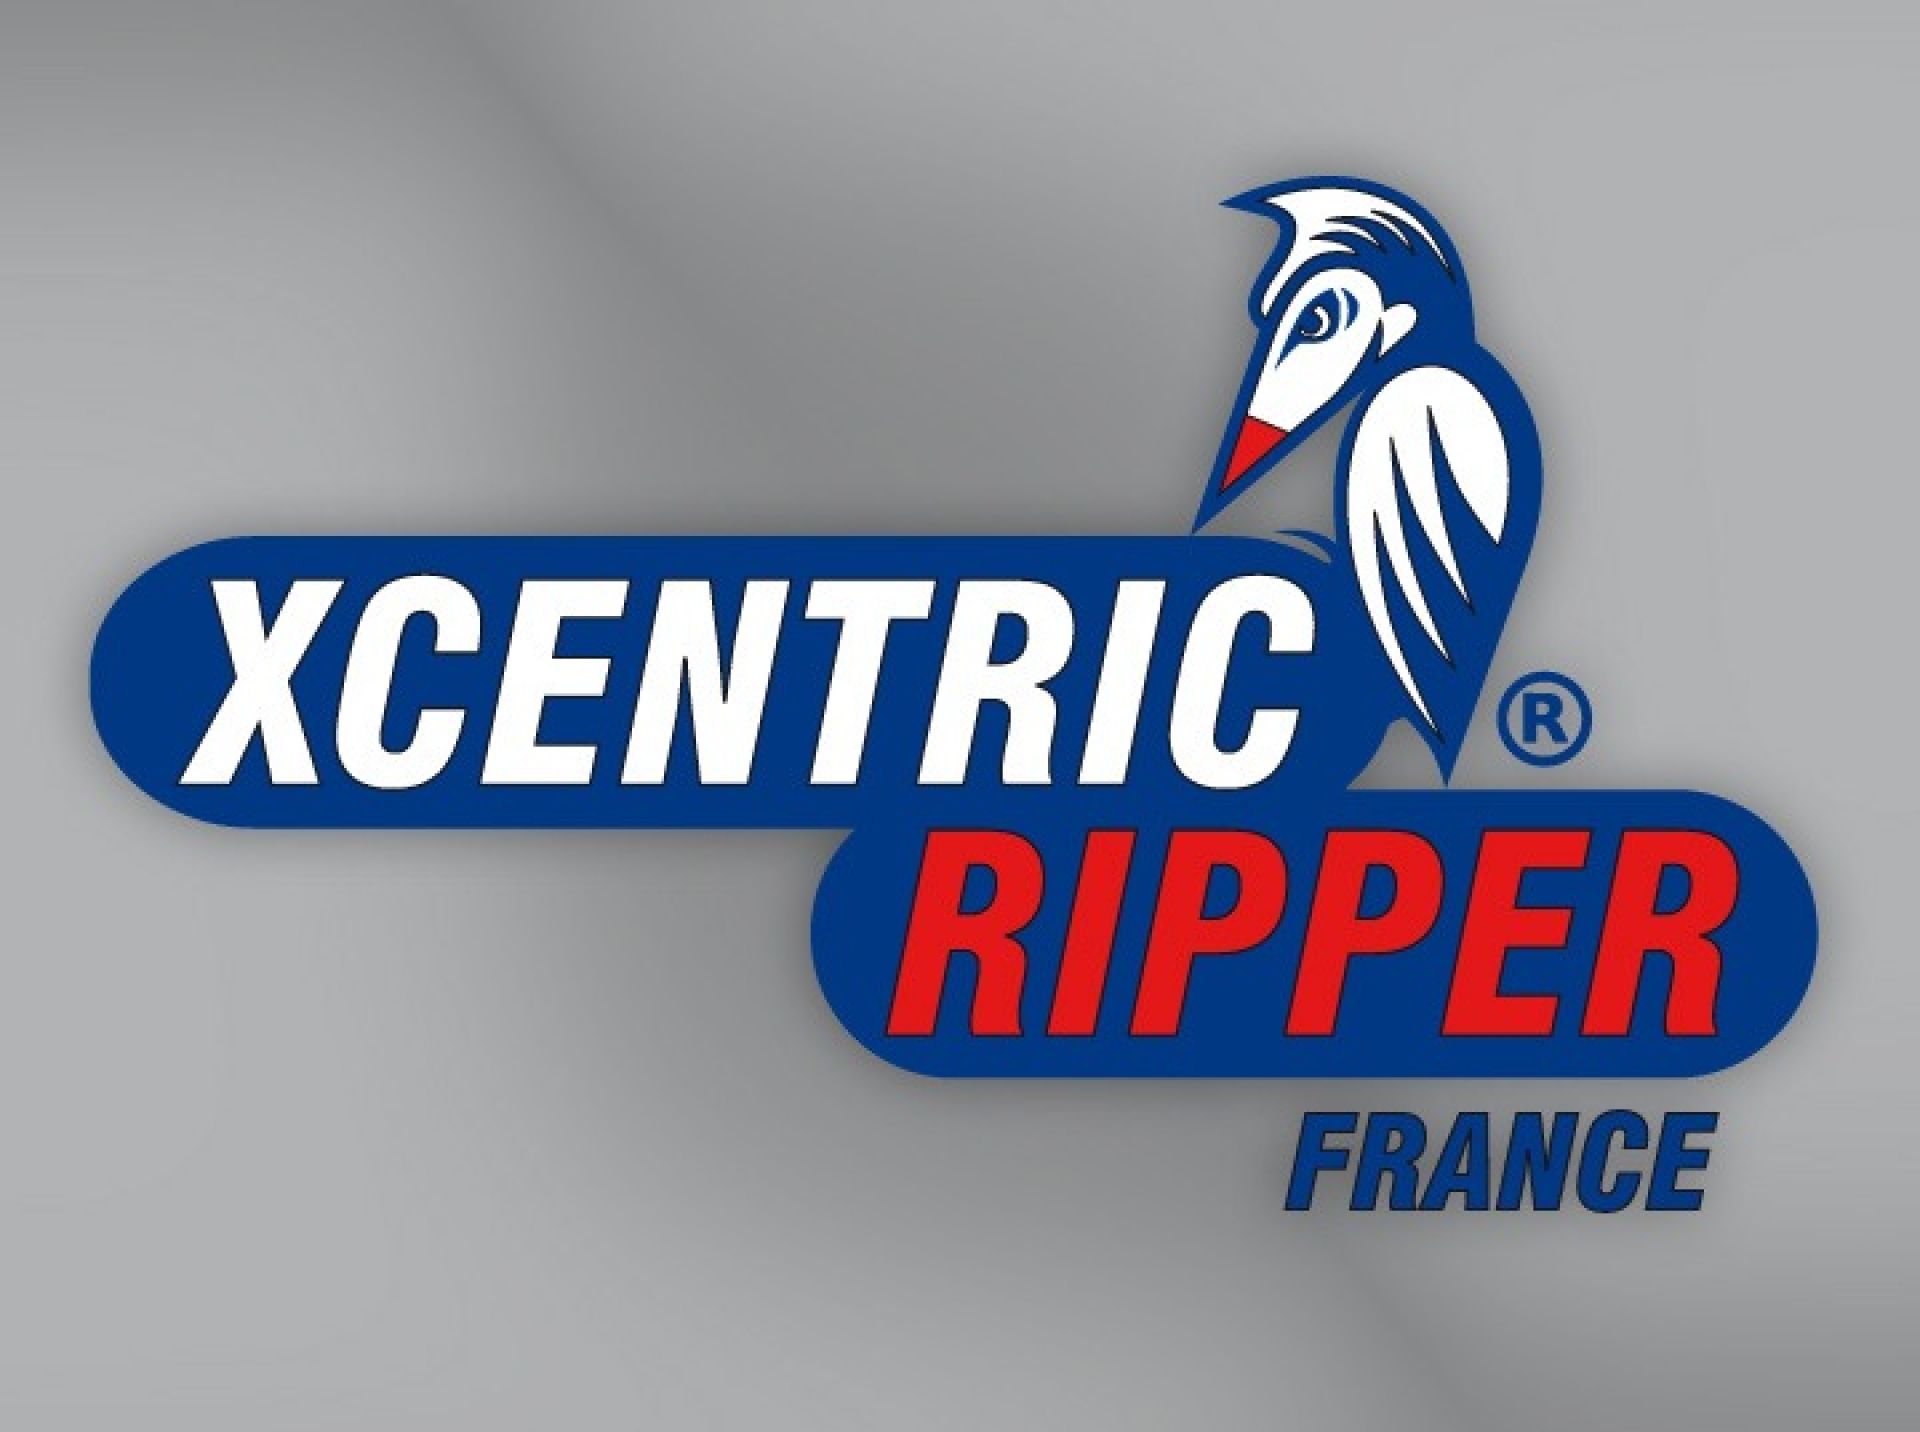 Xcentric Ripper France - Création de la société Xcentric Ripper France